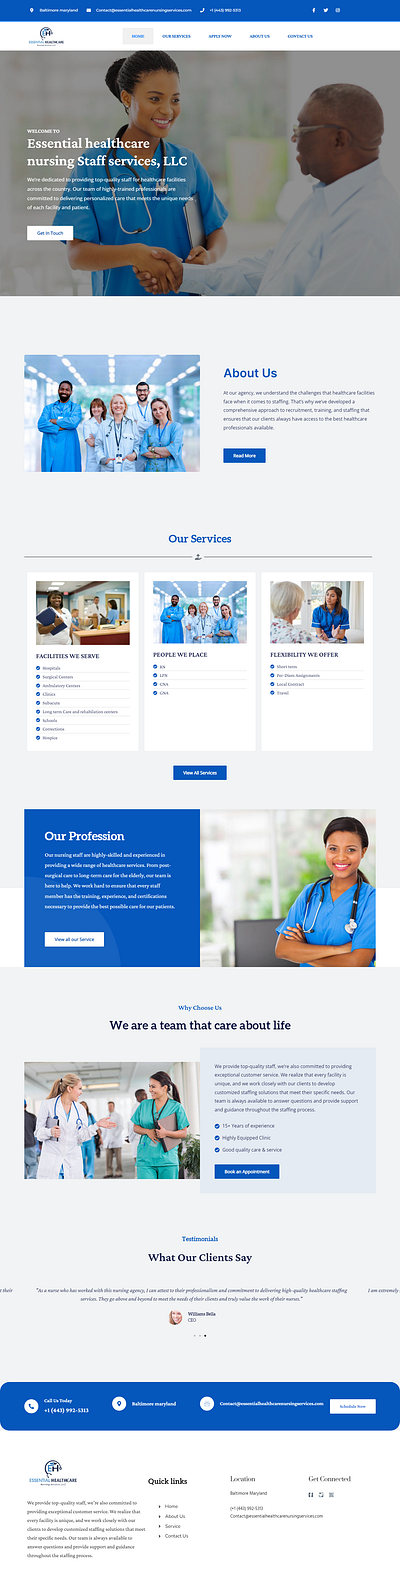 Healthcare staffing website clinic website healthcare healthcare staffing website healthcare website medical website staffing agency website design wordpress website